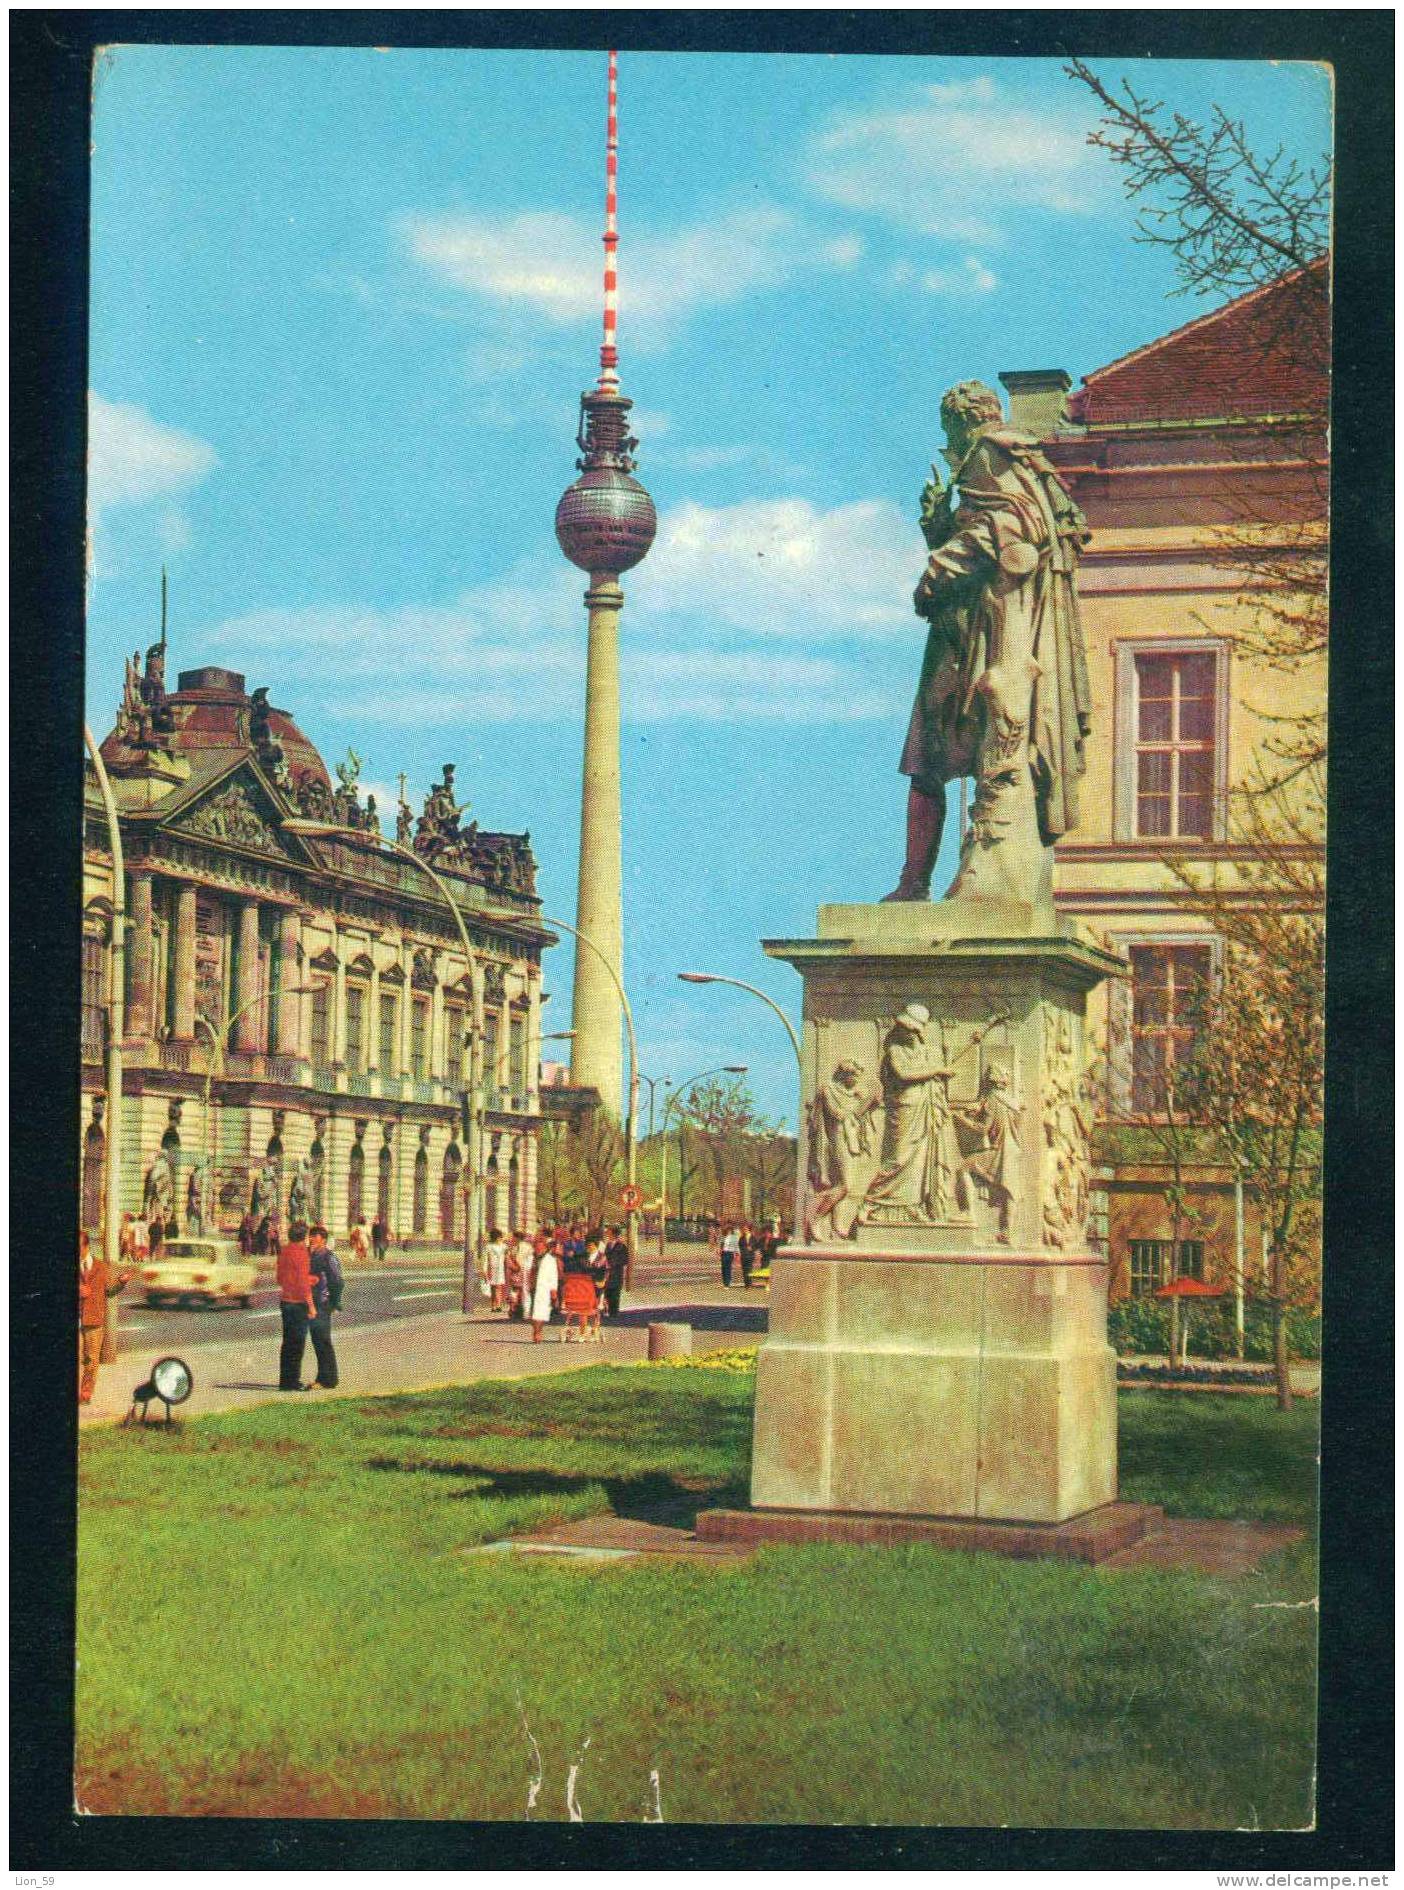 56449 // BERLIN - 1977 UKW , TV TOWER , MUSEUM DEUTSCHE GESCHICHTE Deutschland Germany Allemagne Germania - Covers & Documents